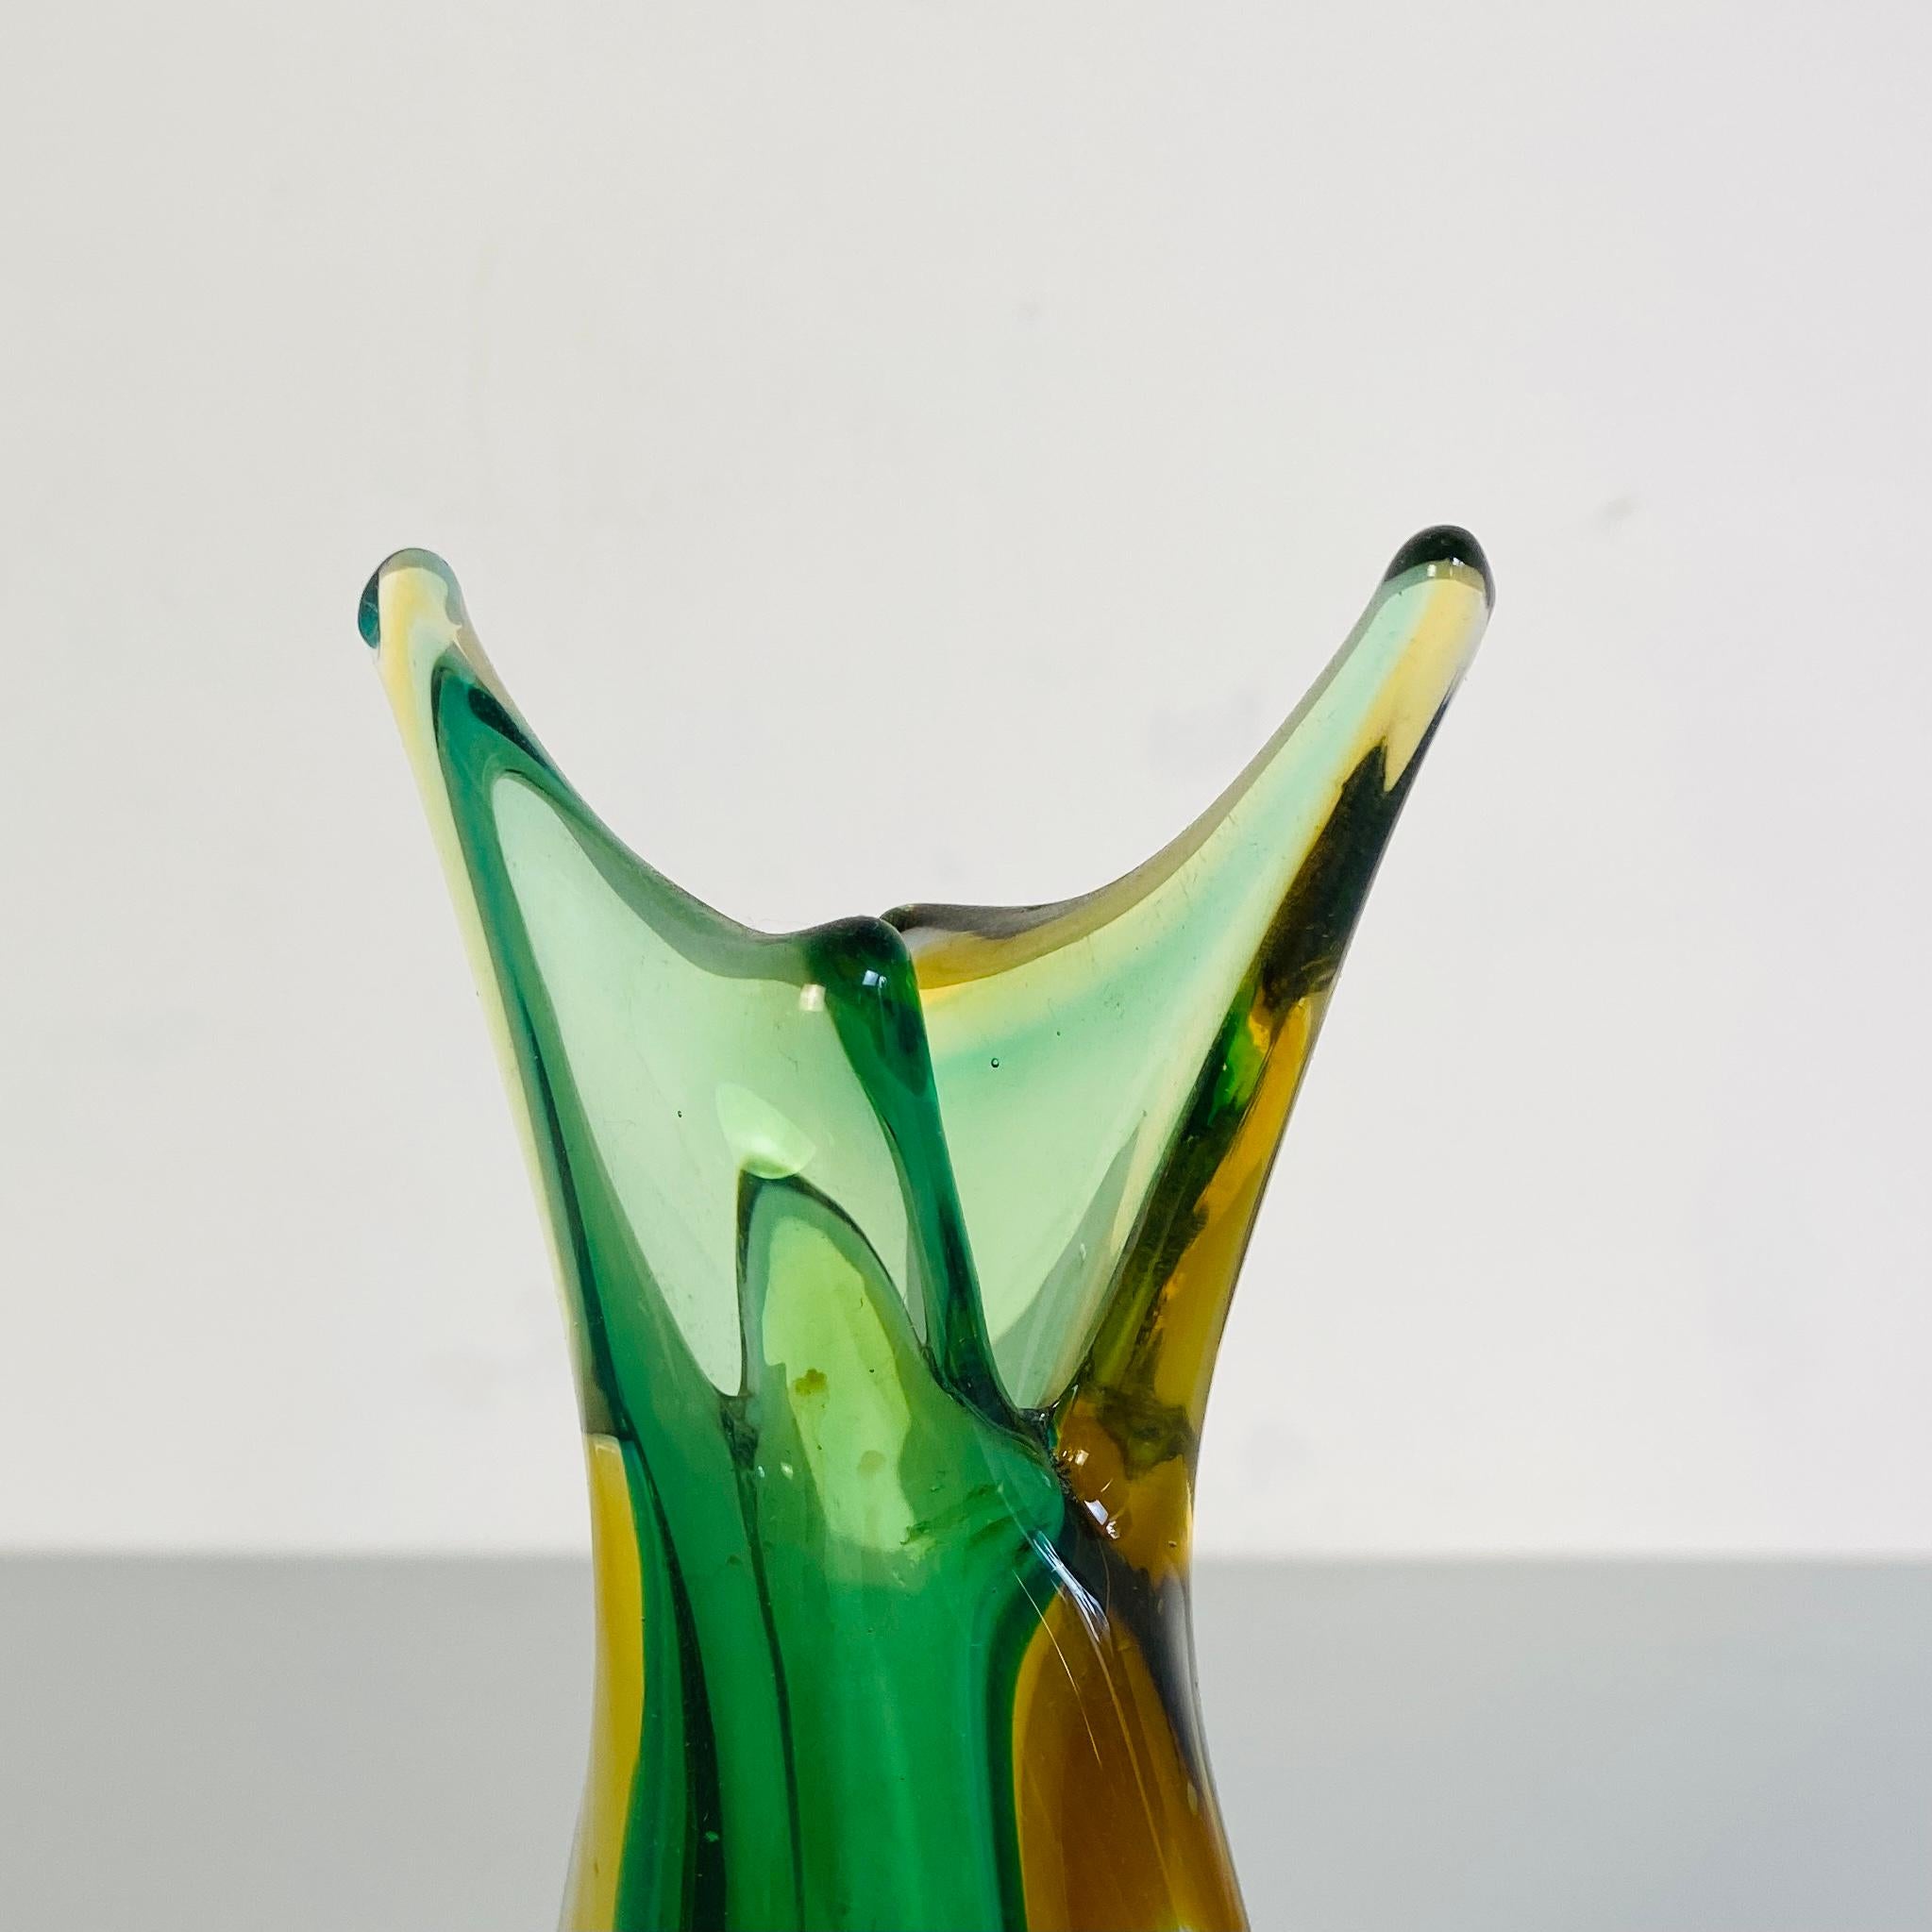 Italian Mid-Century Modern Irregular Murano Glass Vase, Green and Yellow, 1970s 1